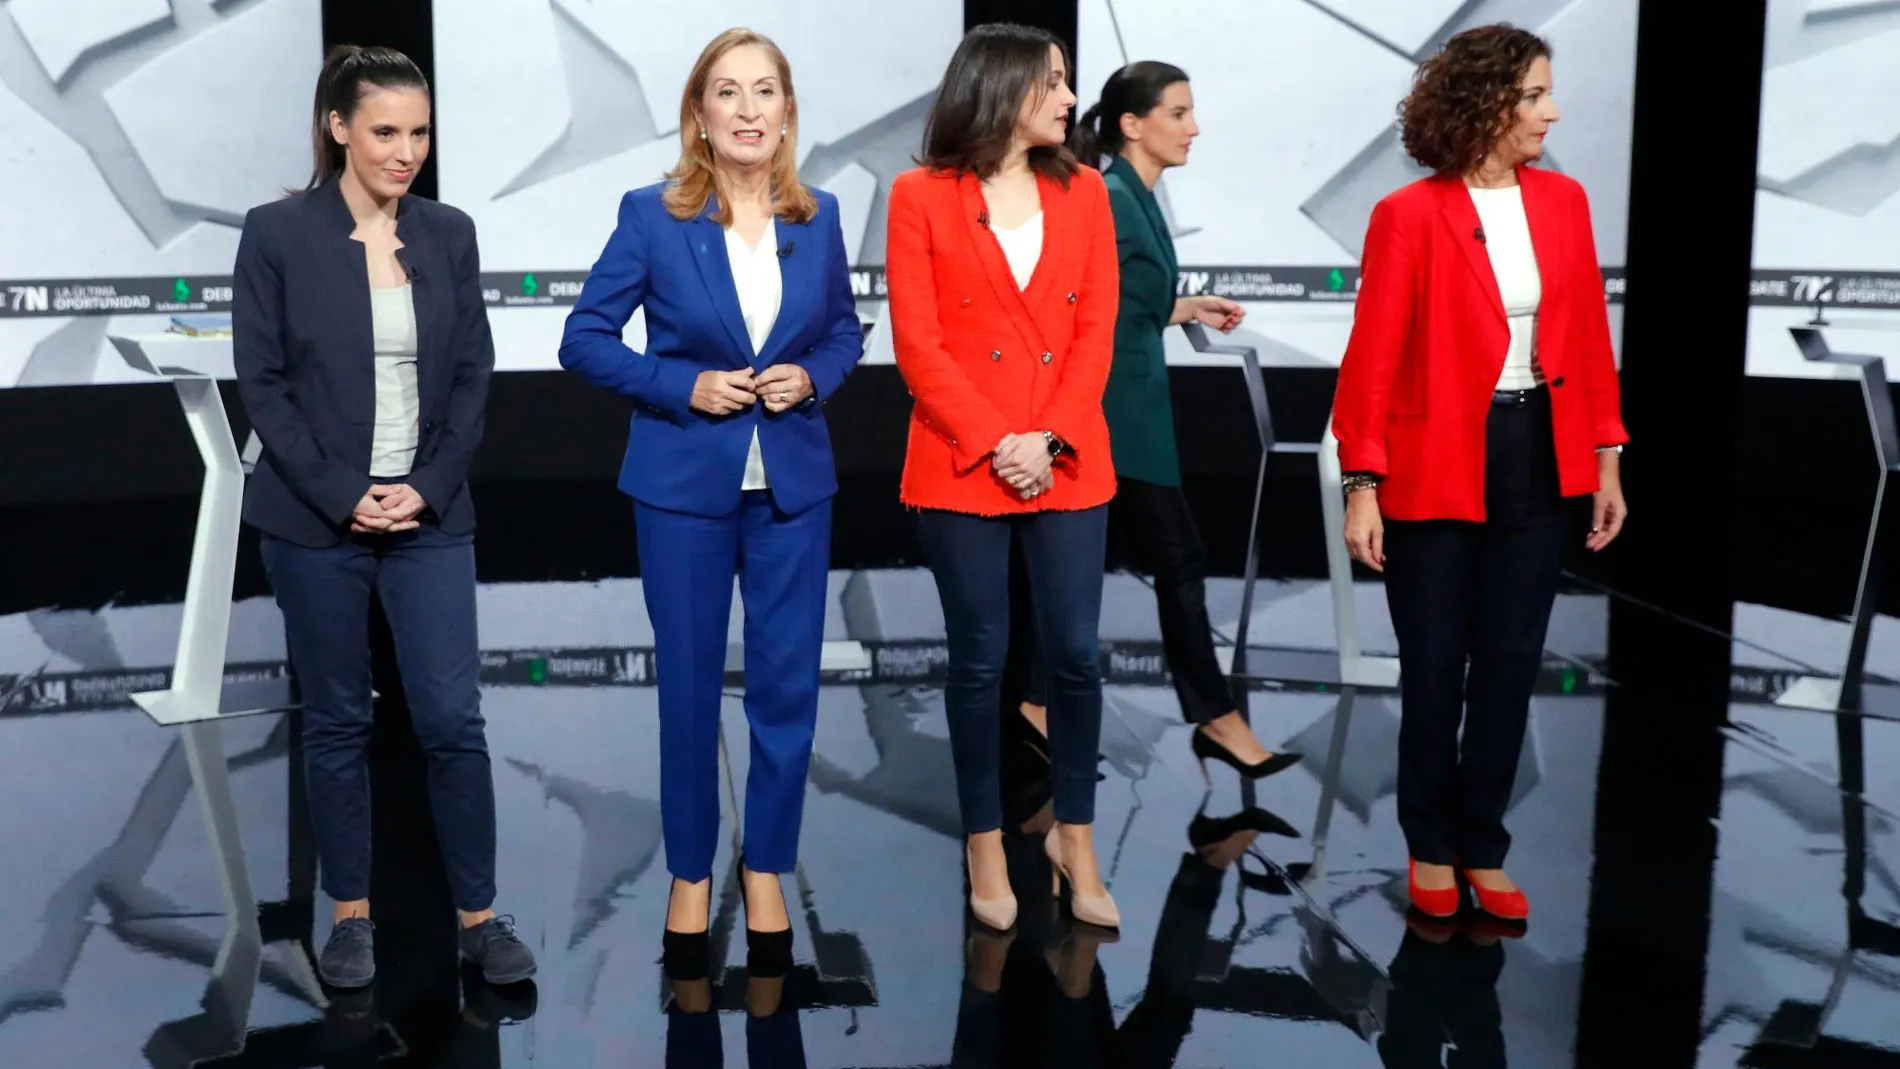 Debate en la Sexta con las representantes femeninas de los distintos partidos / Foto: Jesús G. Feria